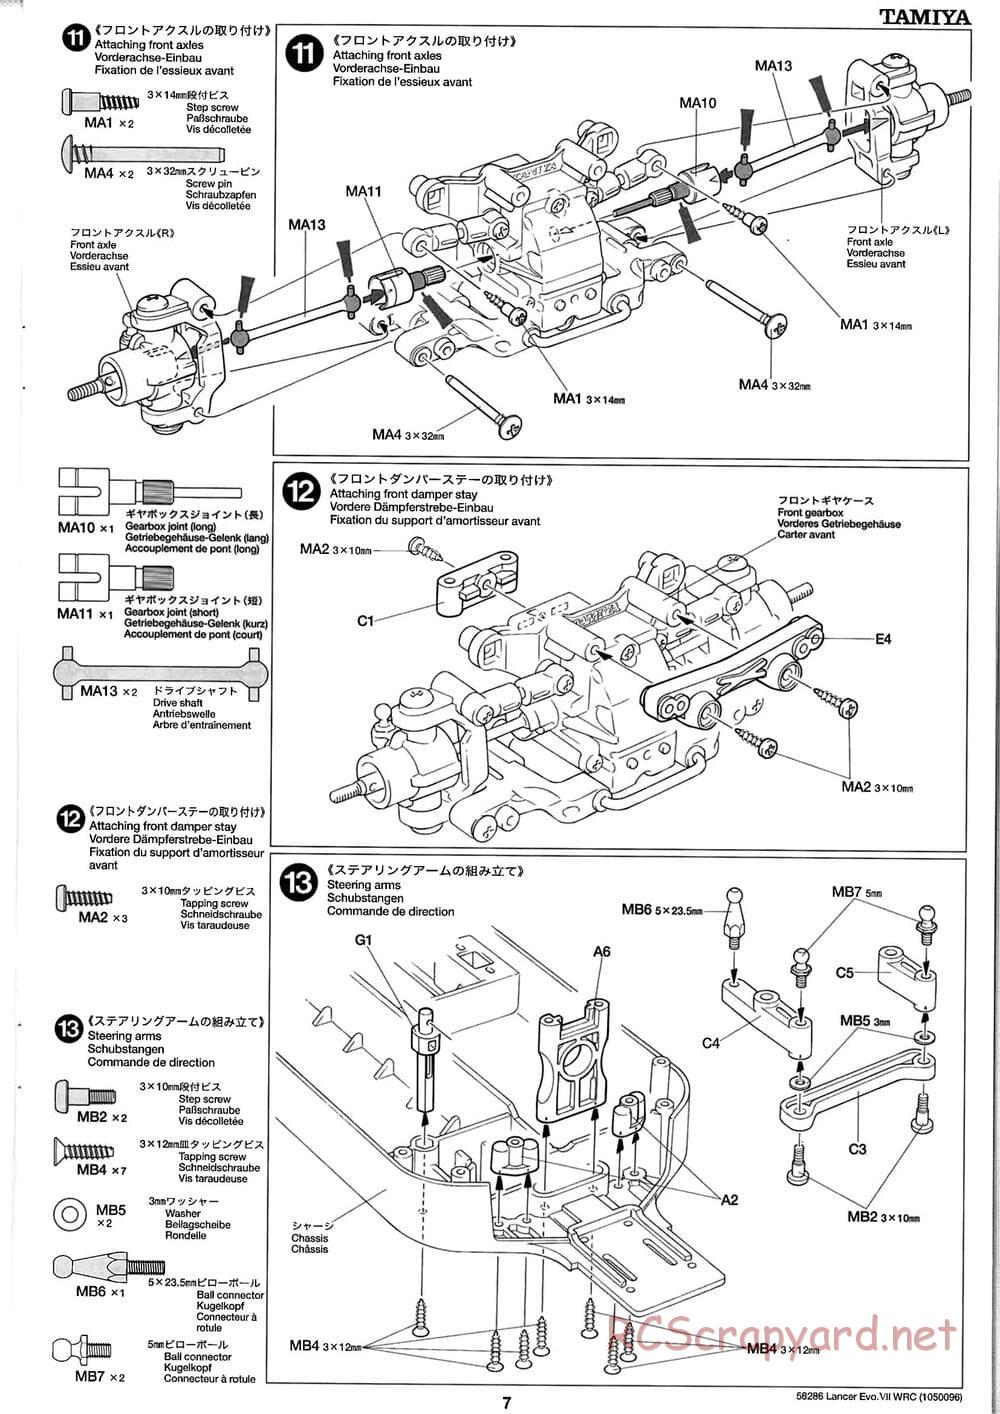 Tamiya - Mitsubishi Lancer Evolution VII WRC - TB-01 Chassis - Manual - Page 7